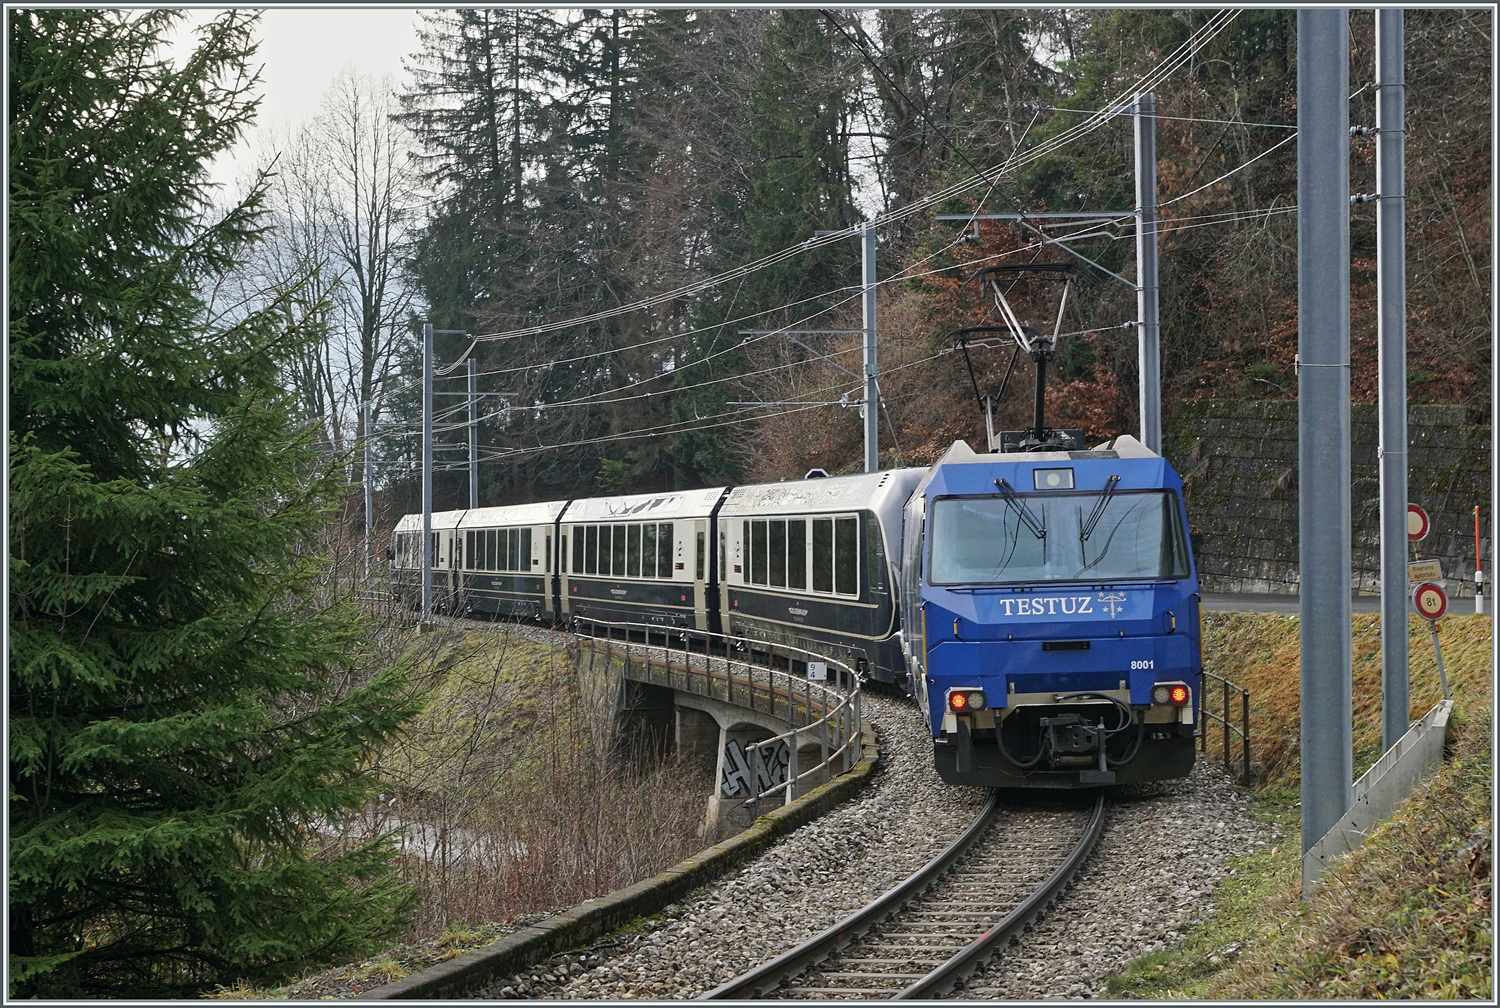 Die MOB Ge 4/4 8001 ist als Schublok mit dem GoldenPass Express 4065 von Interlaken nach Montreux unterwegs. Die Ge 4/4 8001 hat den Zug in Zweisimmen übernommen und rollt nun kurz nach der 93 Meter langen Pont Gardiol, welche den Bois des Chenaux überbrückt, ihrem Ziel Montreux entgegen.

4. Januar 2023